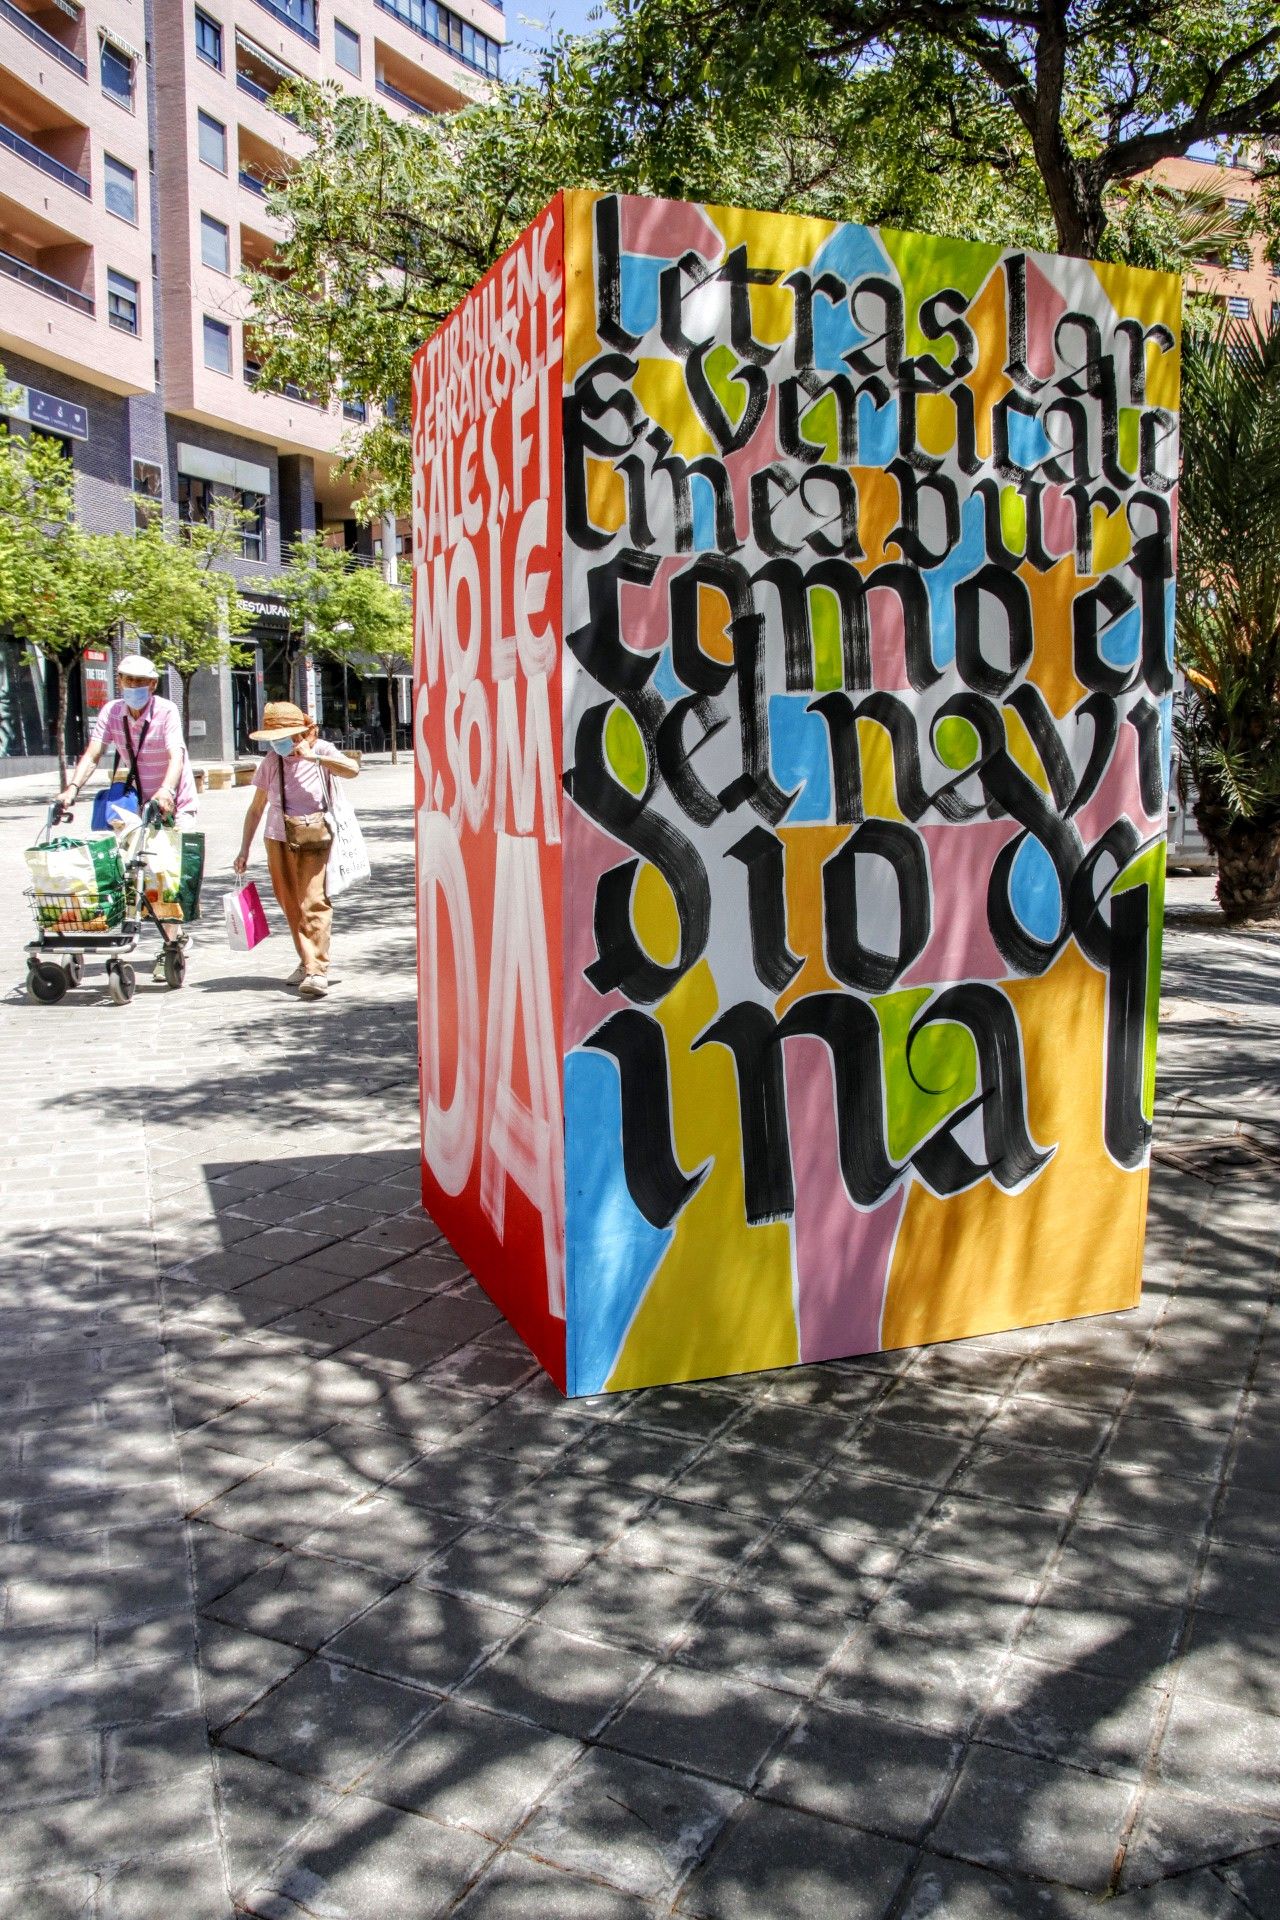 "Tótem revolutum", exposición de arte urbano en Alicante